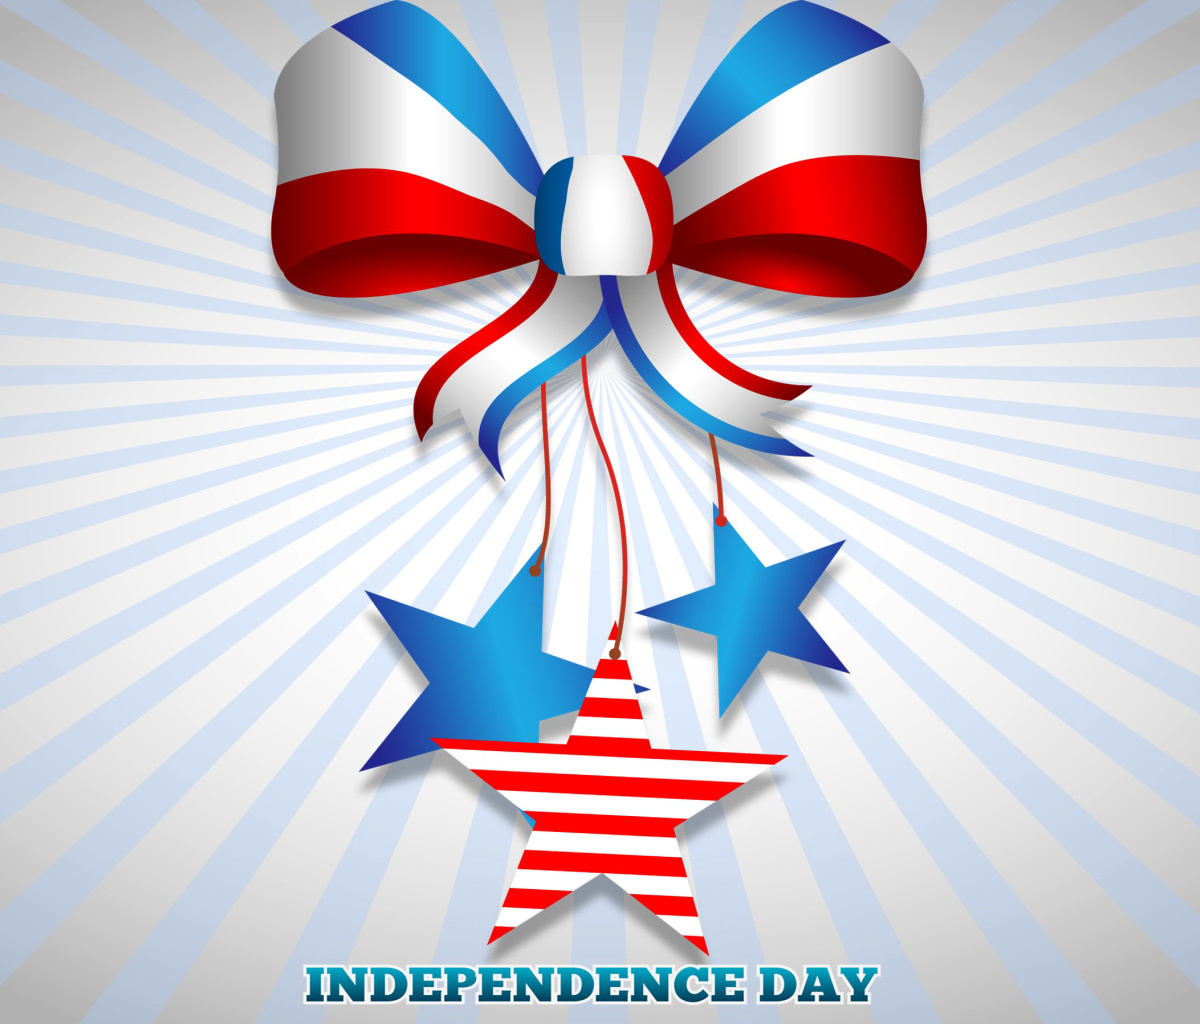 Sfondi United states america Idependence day 4th july 1200x1024